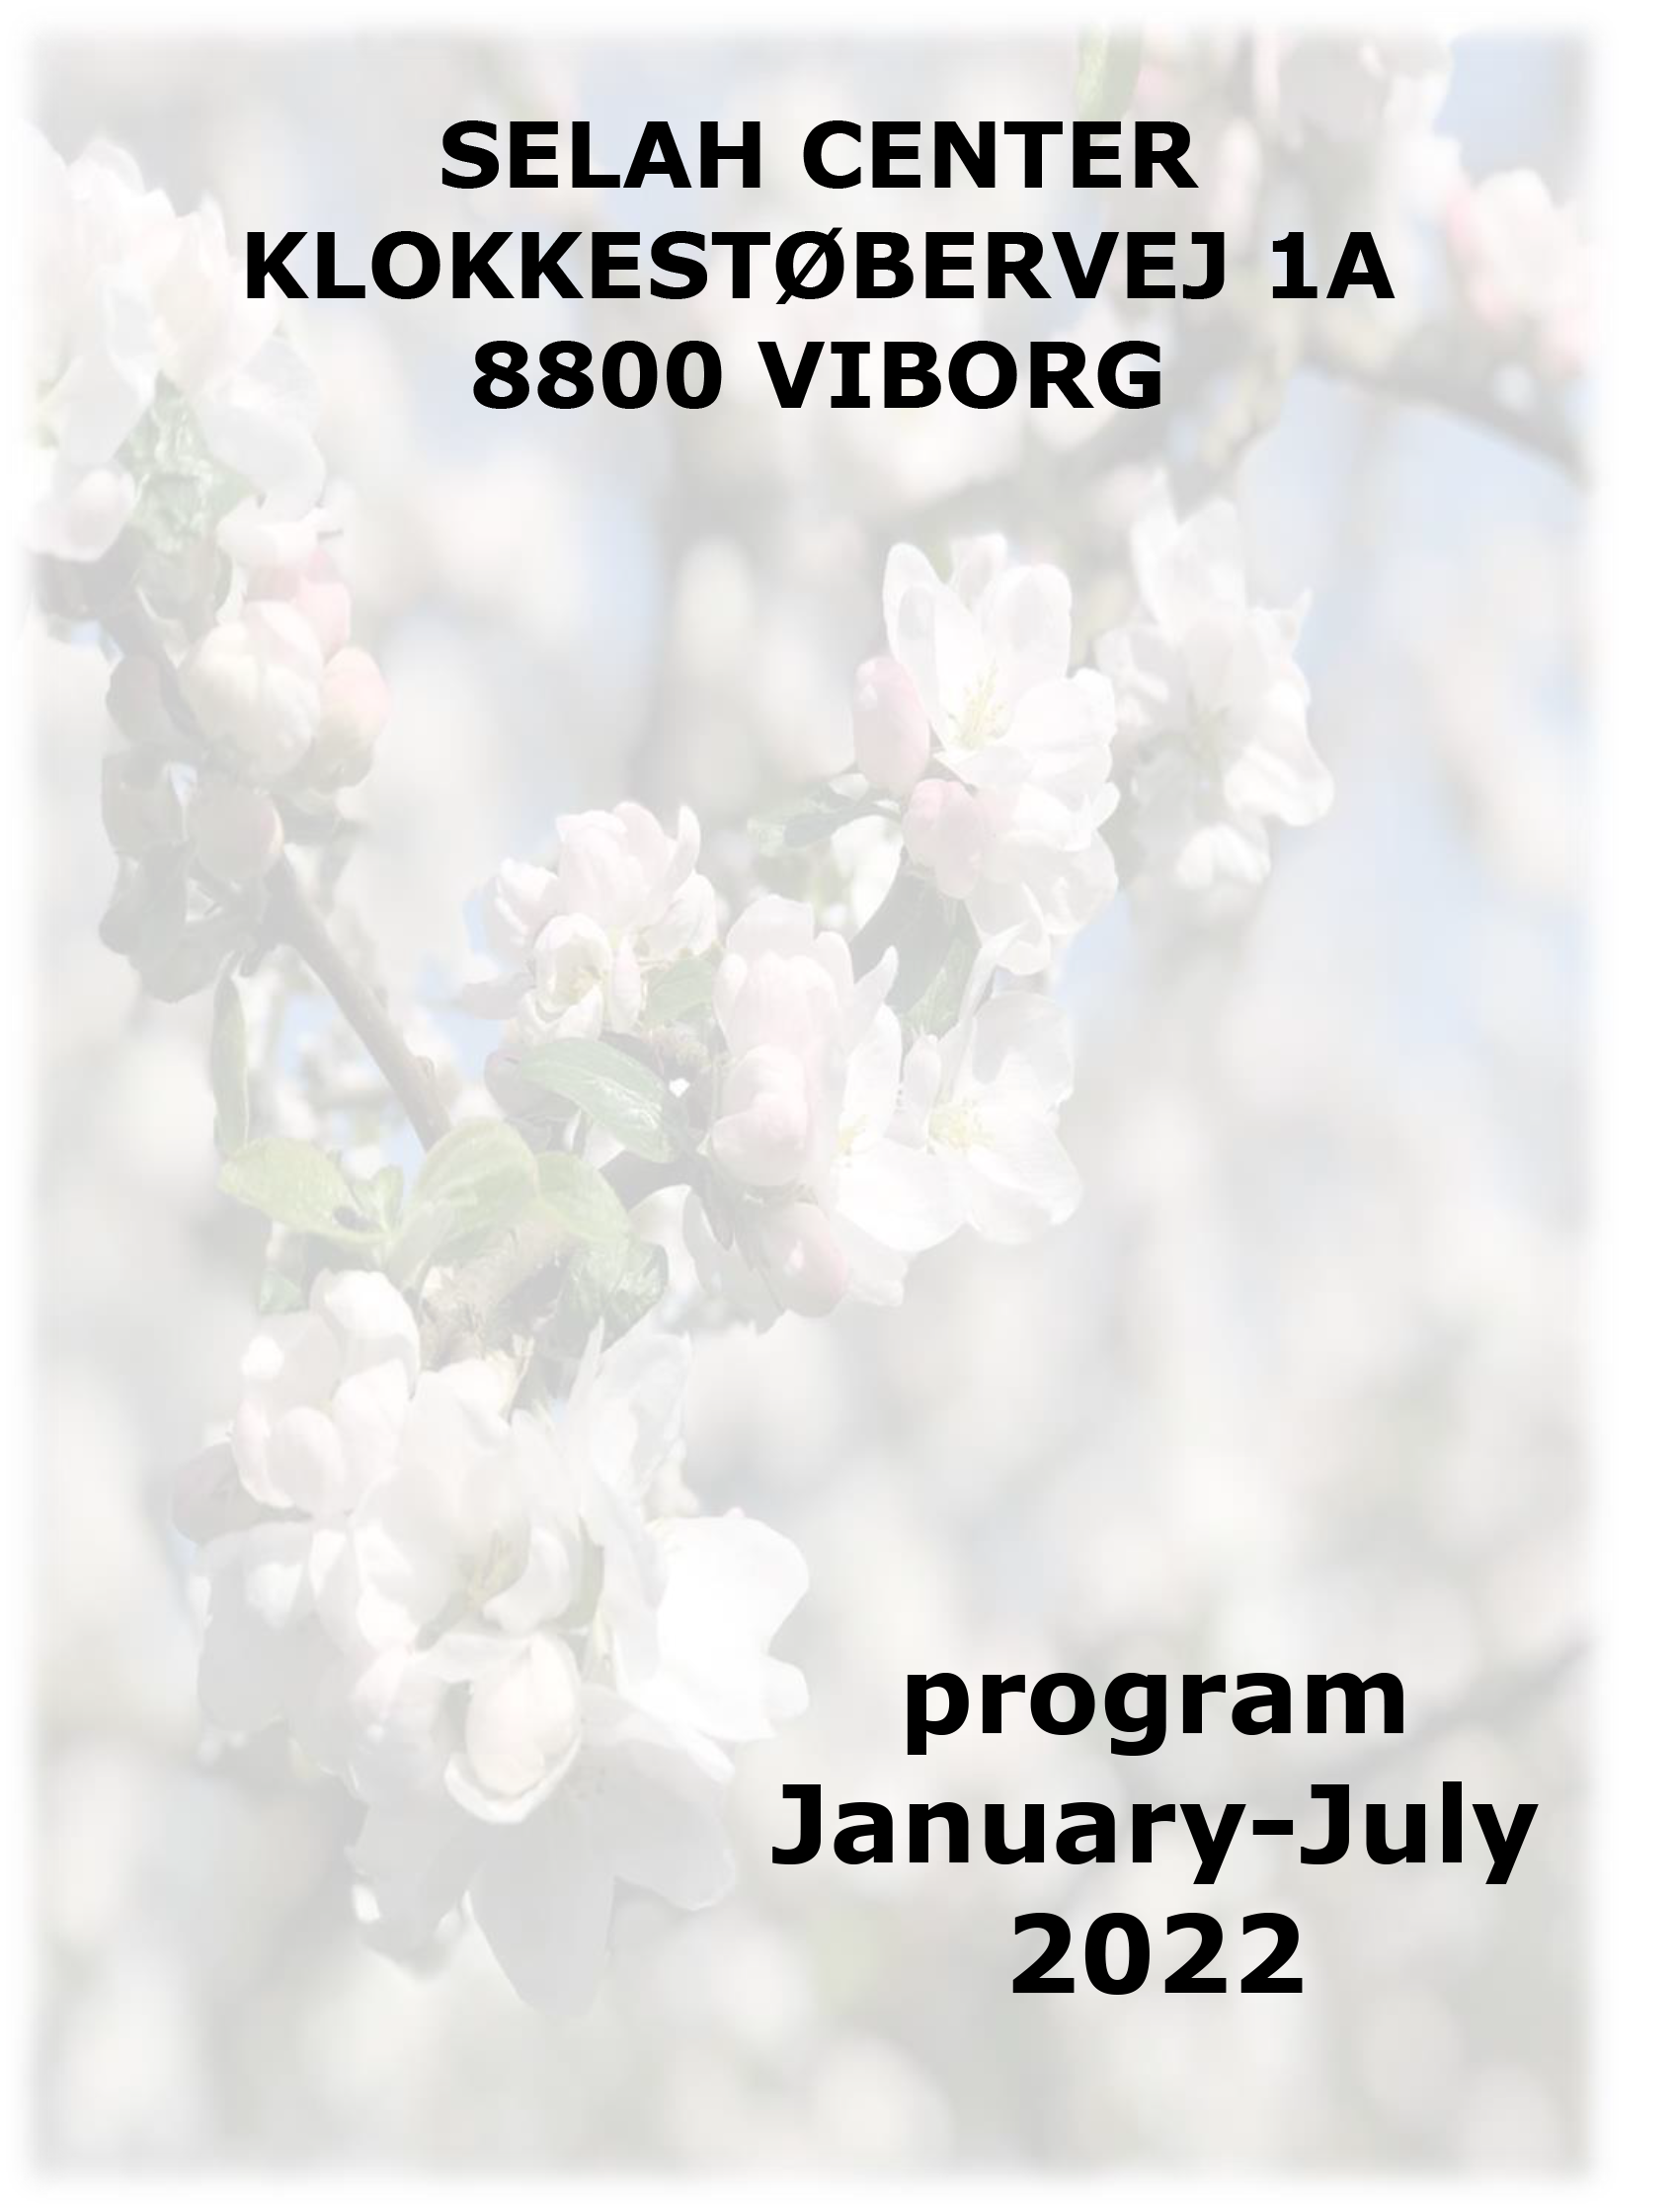 Program for spring 2022